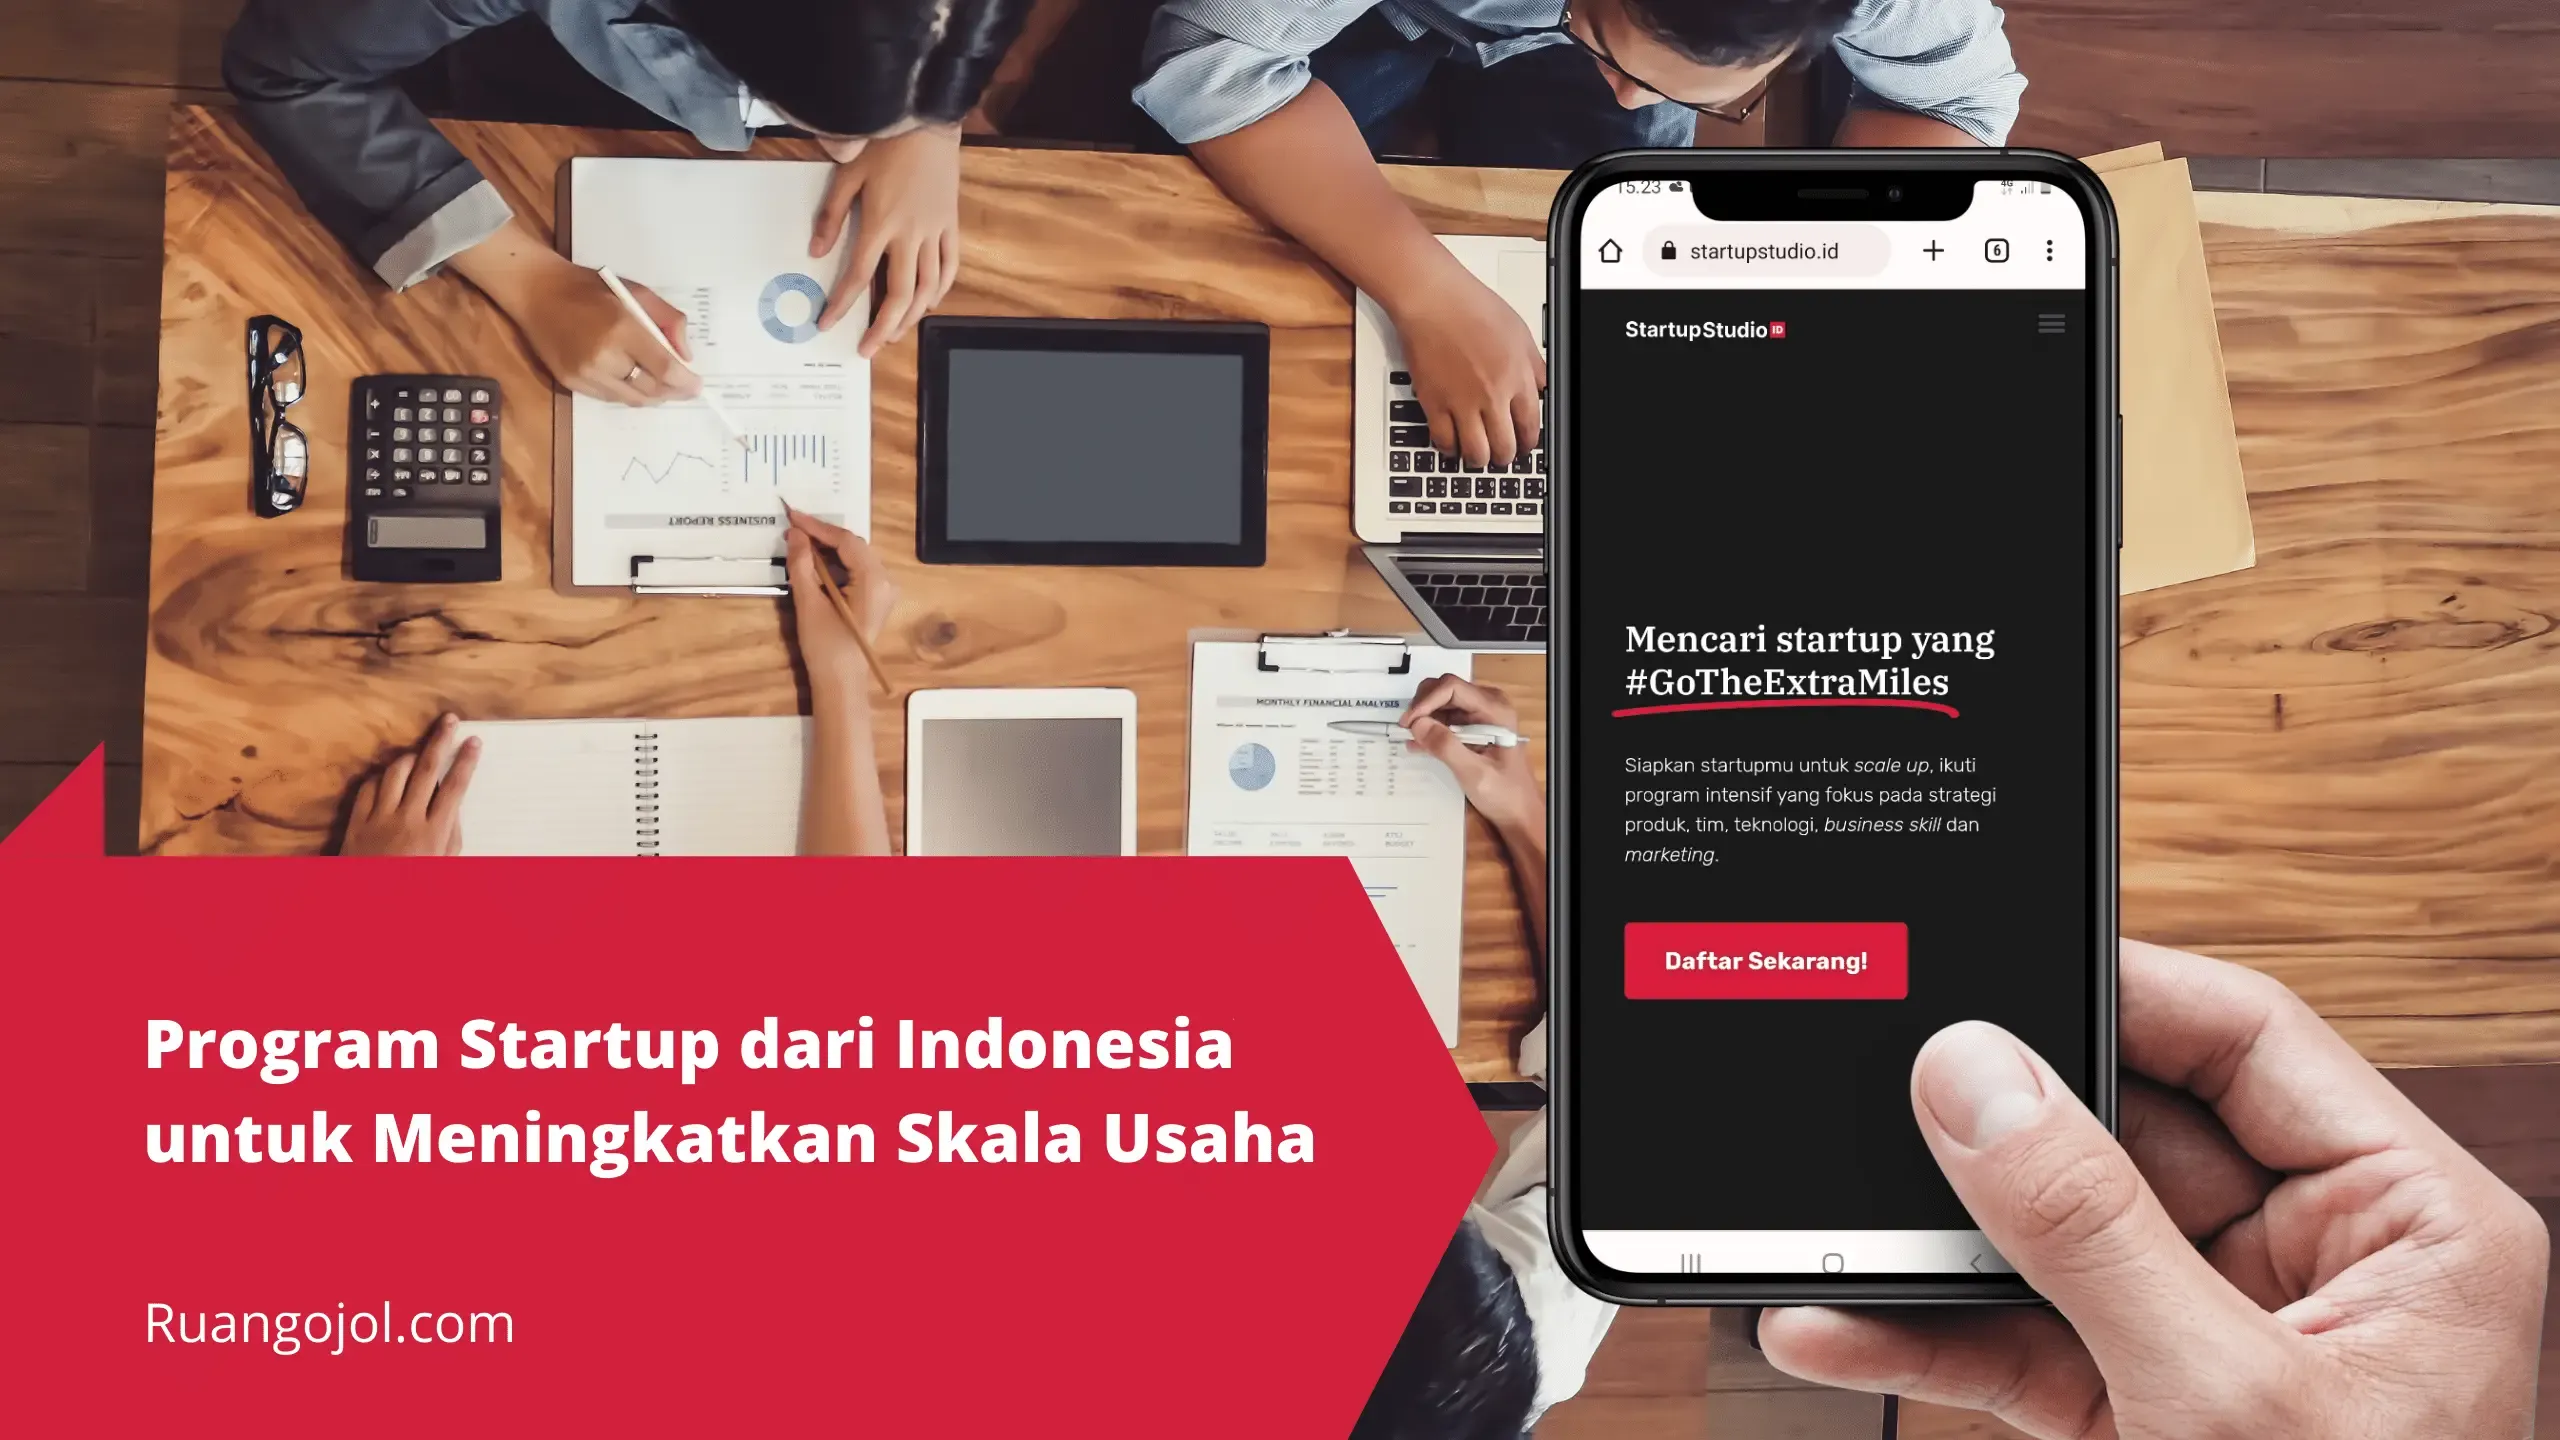 Program Startup dari Indonesia untuk Meningkatkan Skala Usaha